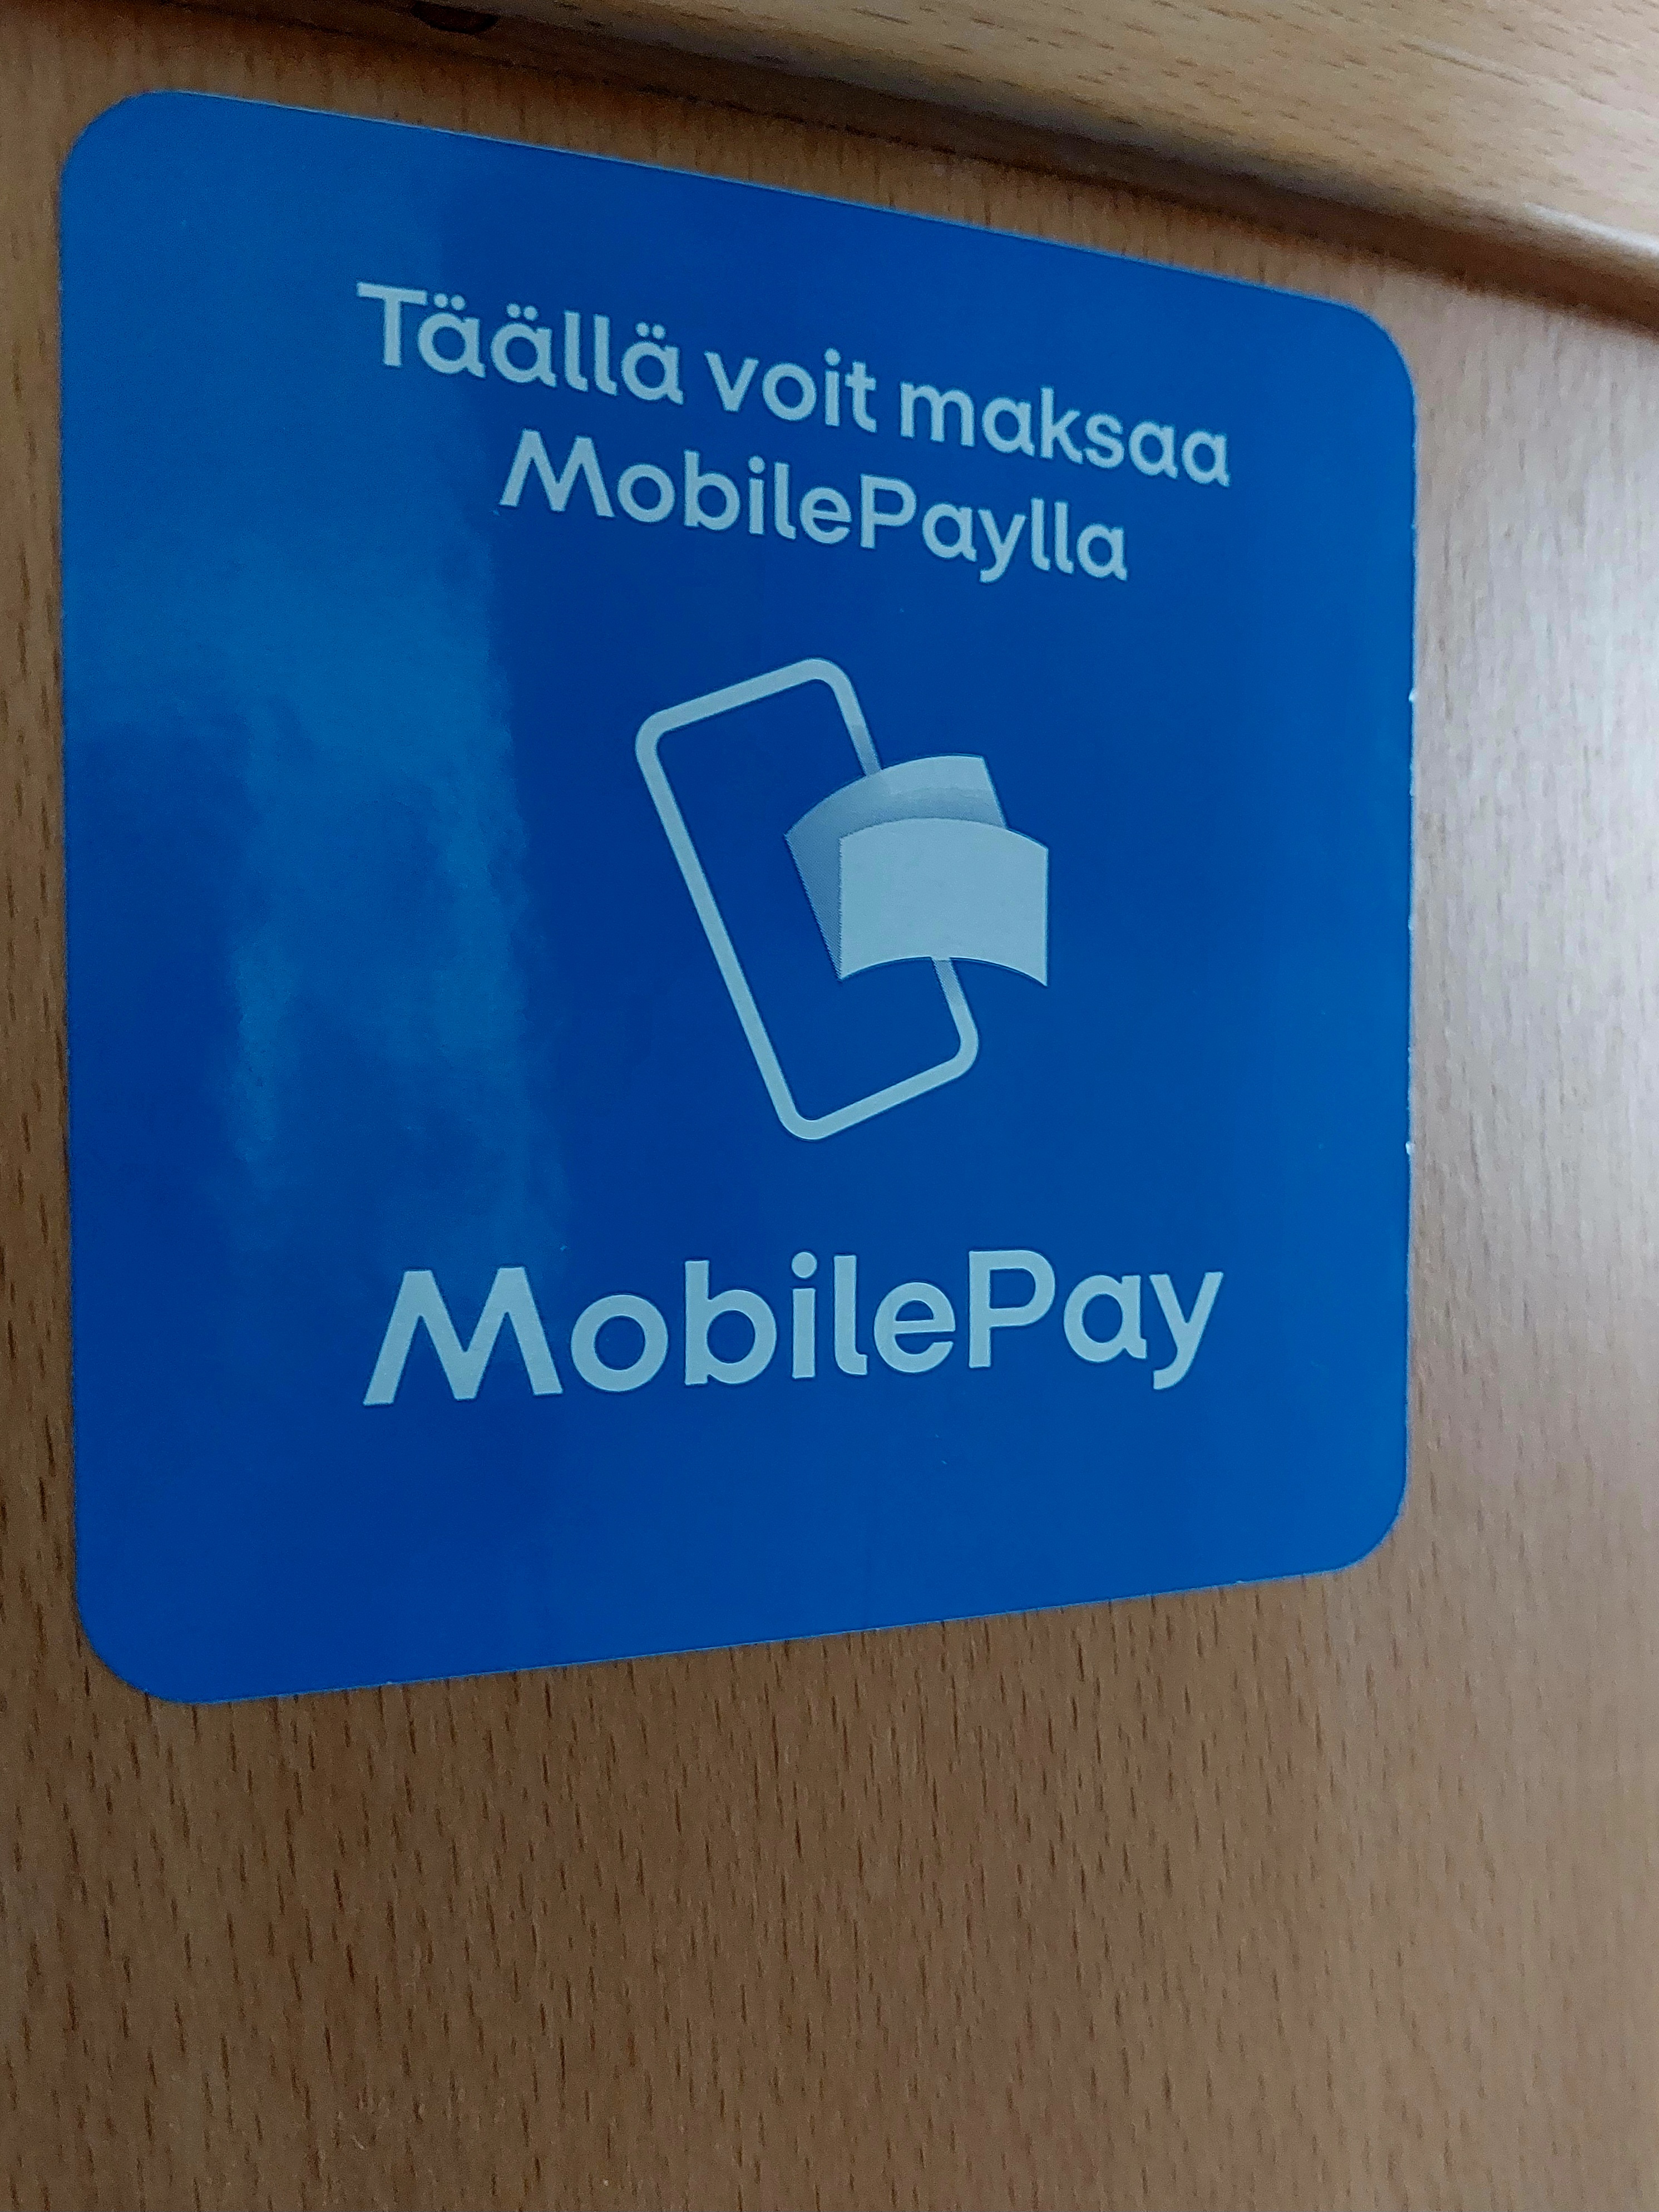 Tarra jossa teksti täällä voit maksaa MobilePaylla.